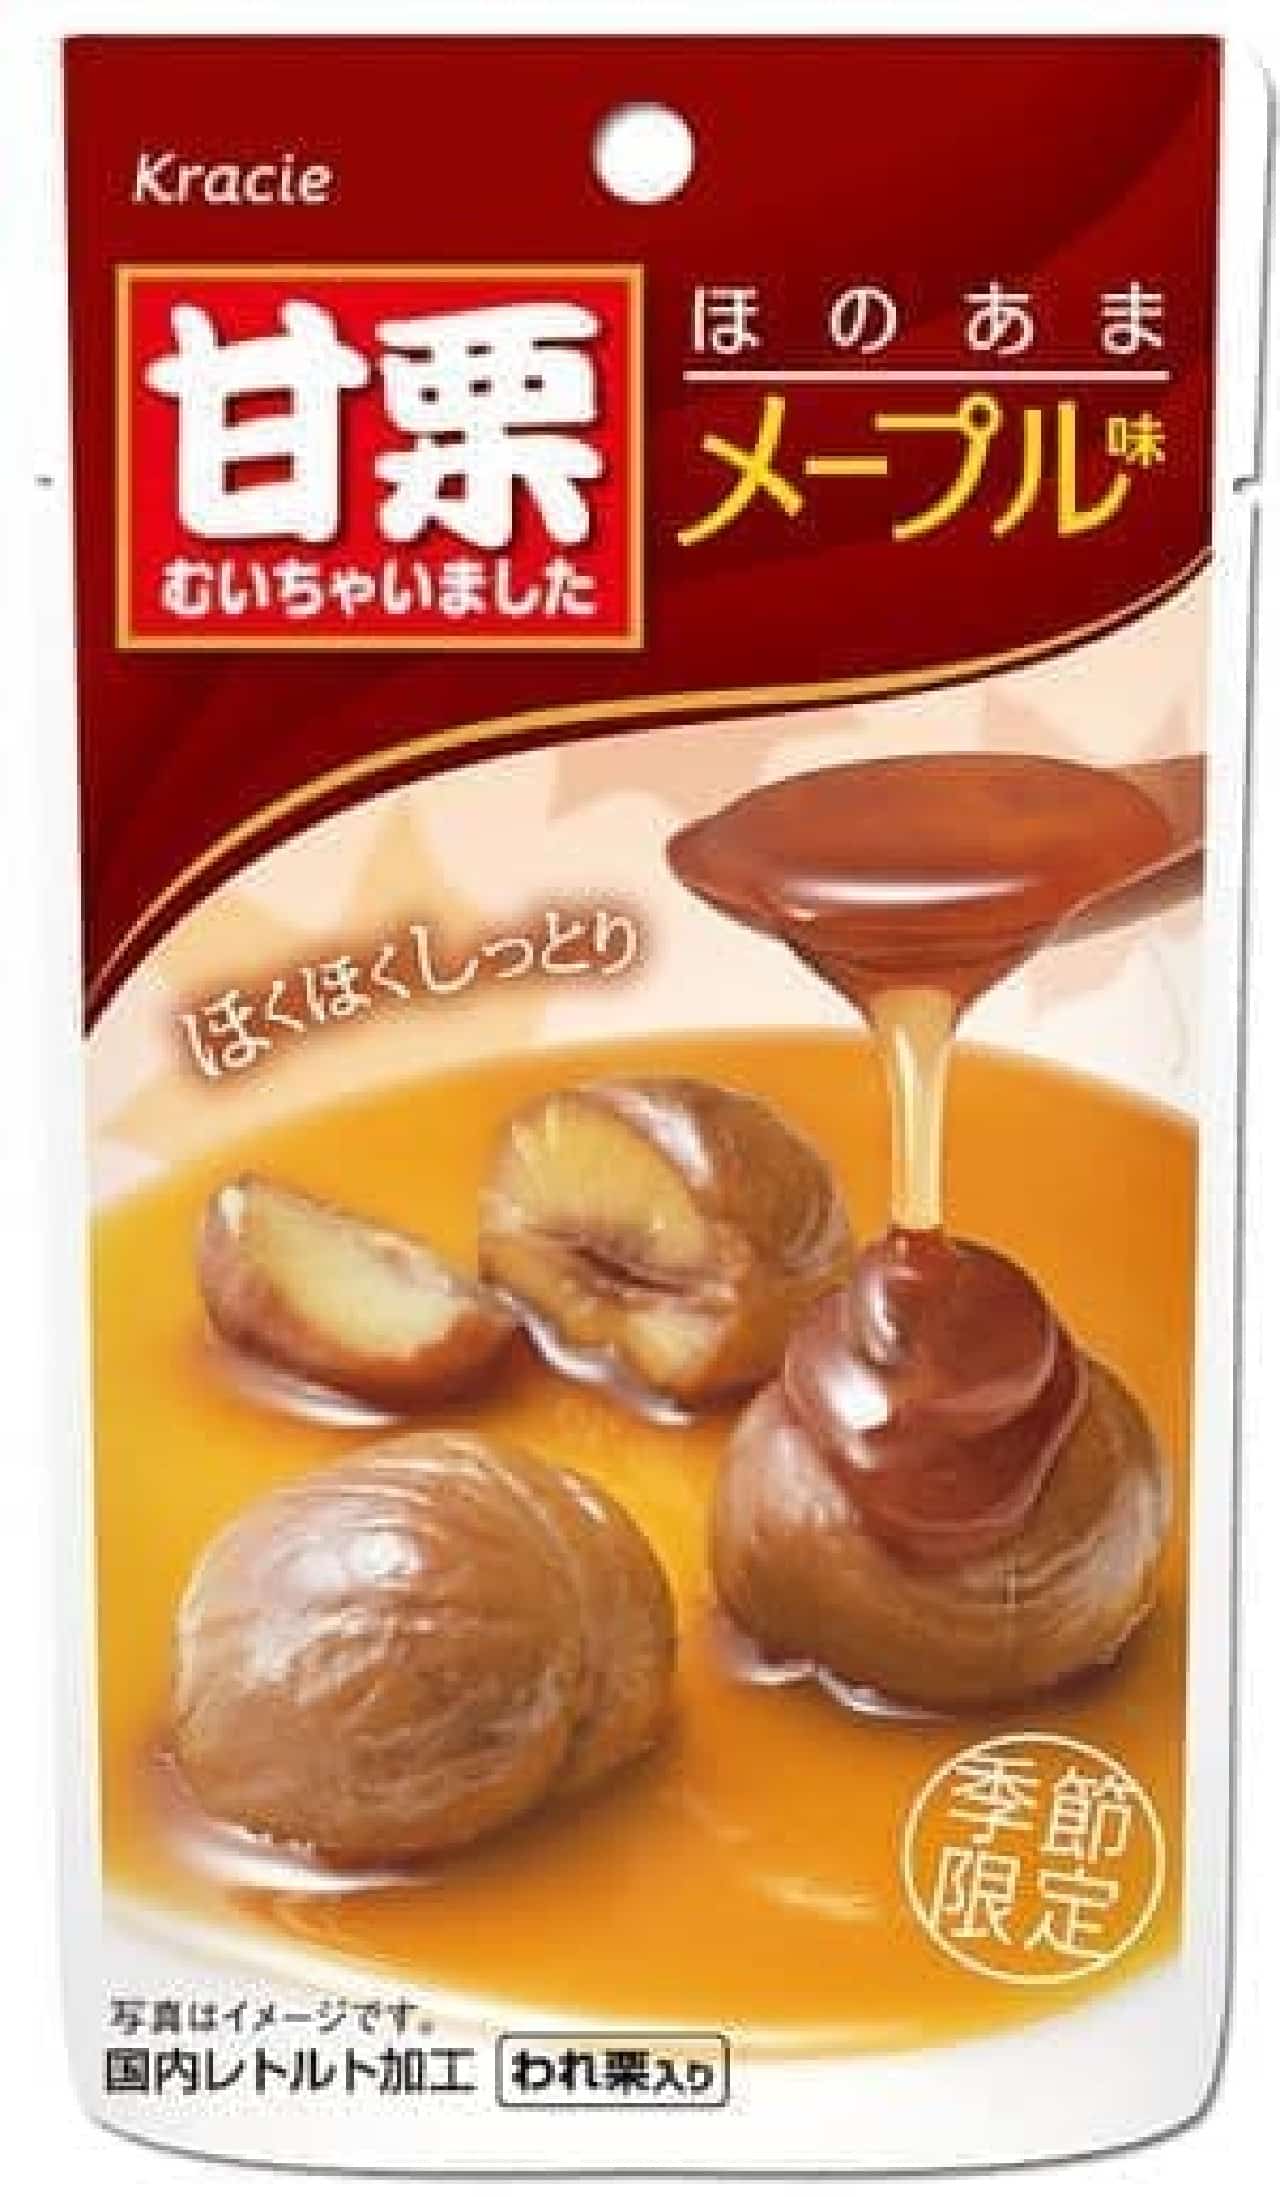 Kracie Foods "Amaguri Muchaita Honoma Maple Flavor"